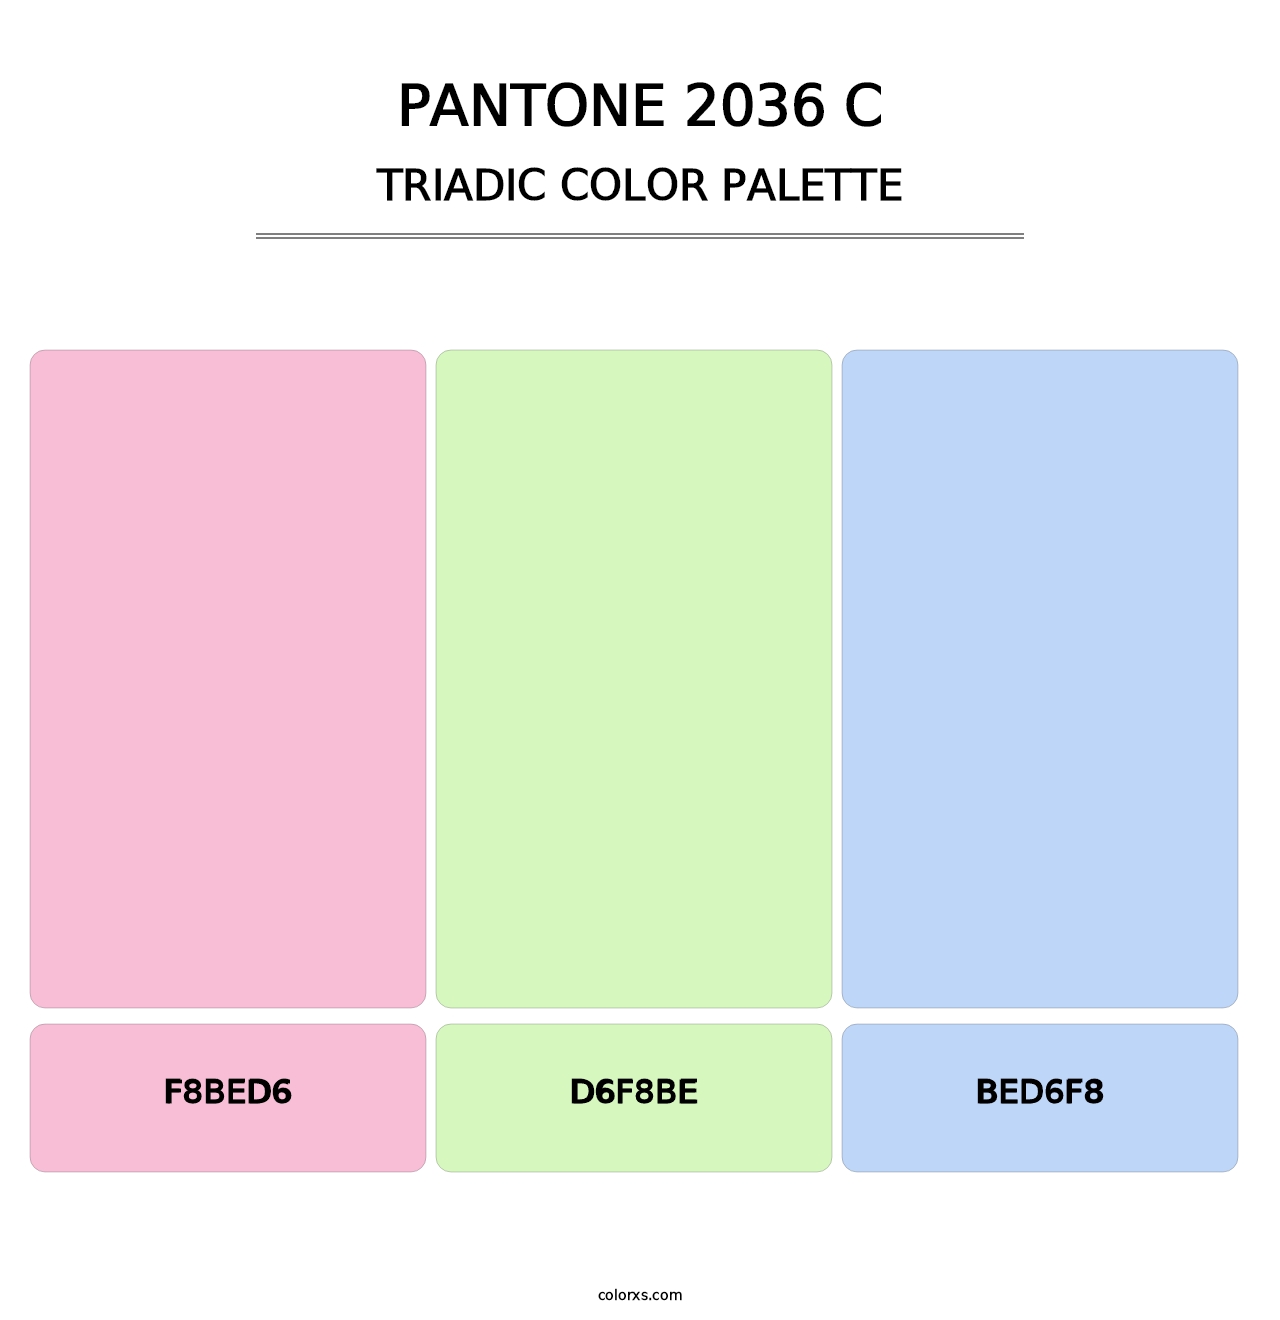 PANTONE 2036 C - Triadic Color Palette